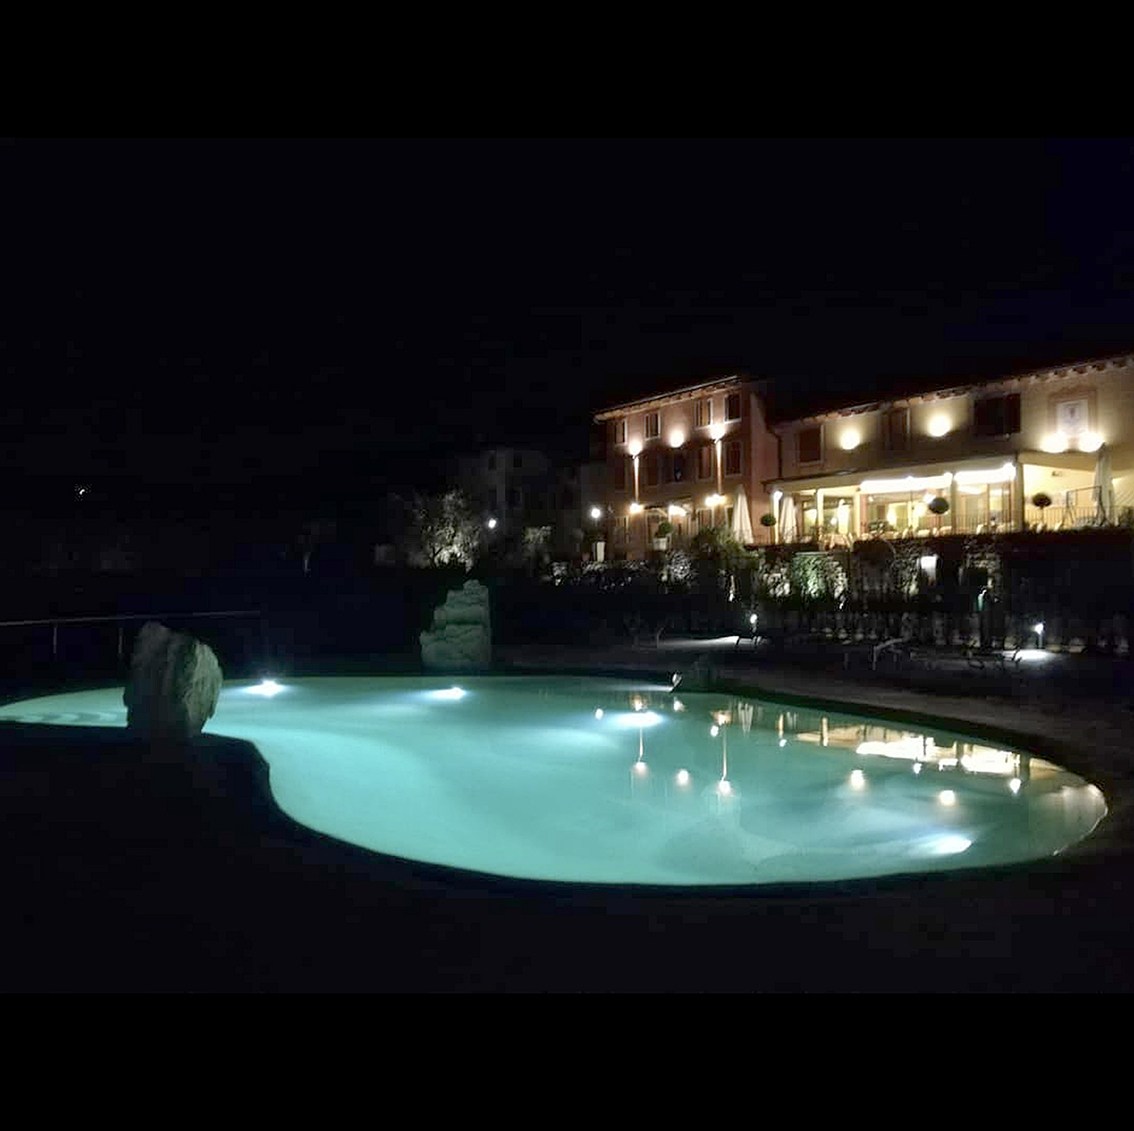 vue de nuit d'une piscine lagon